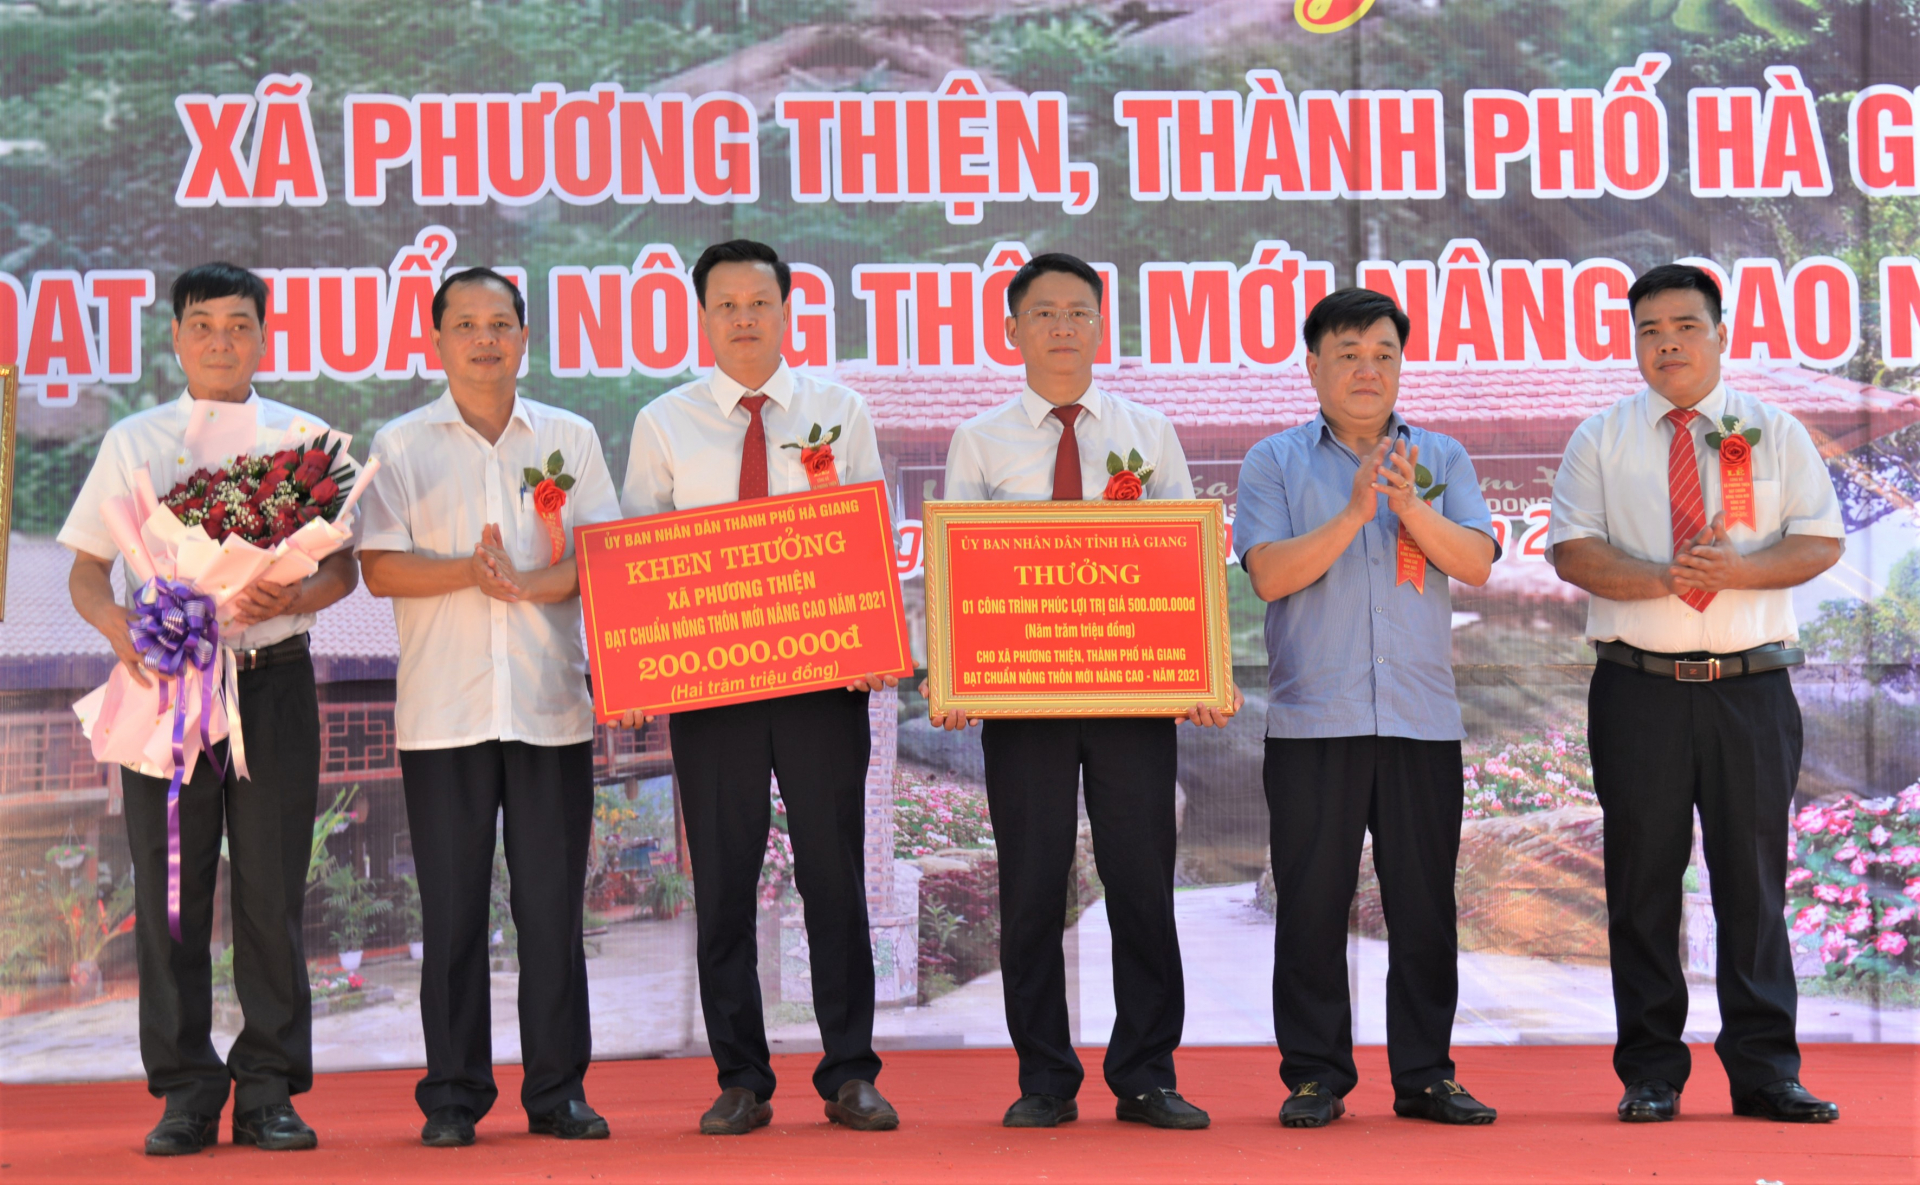 Lãnh đạo thành phố Hà Giang trao phần thưởng của UBND tỉnh và UBND thành phố cho xã Phương Thiện